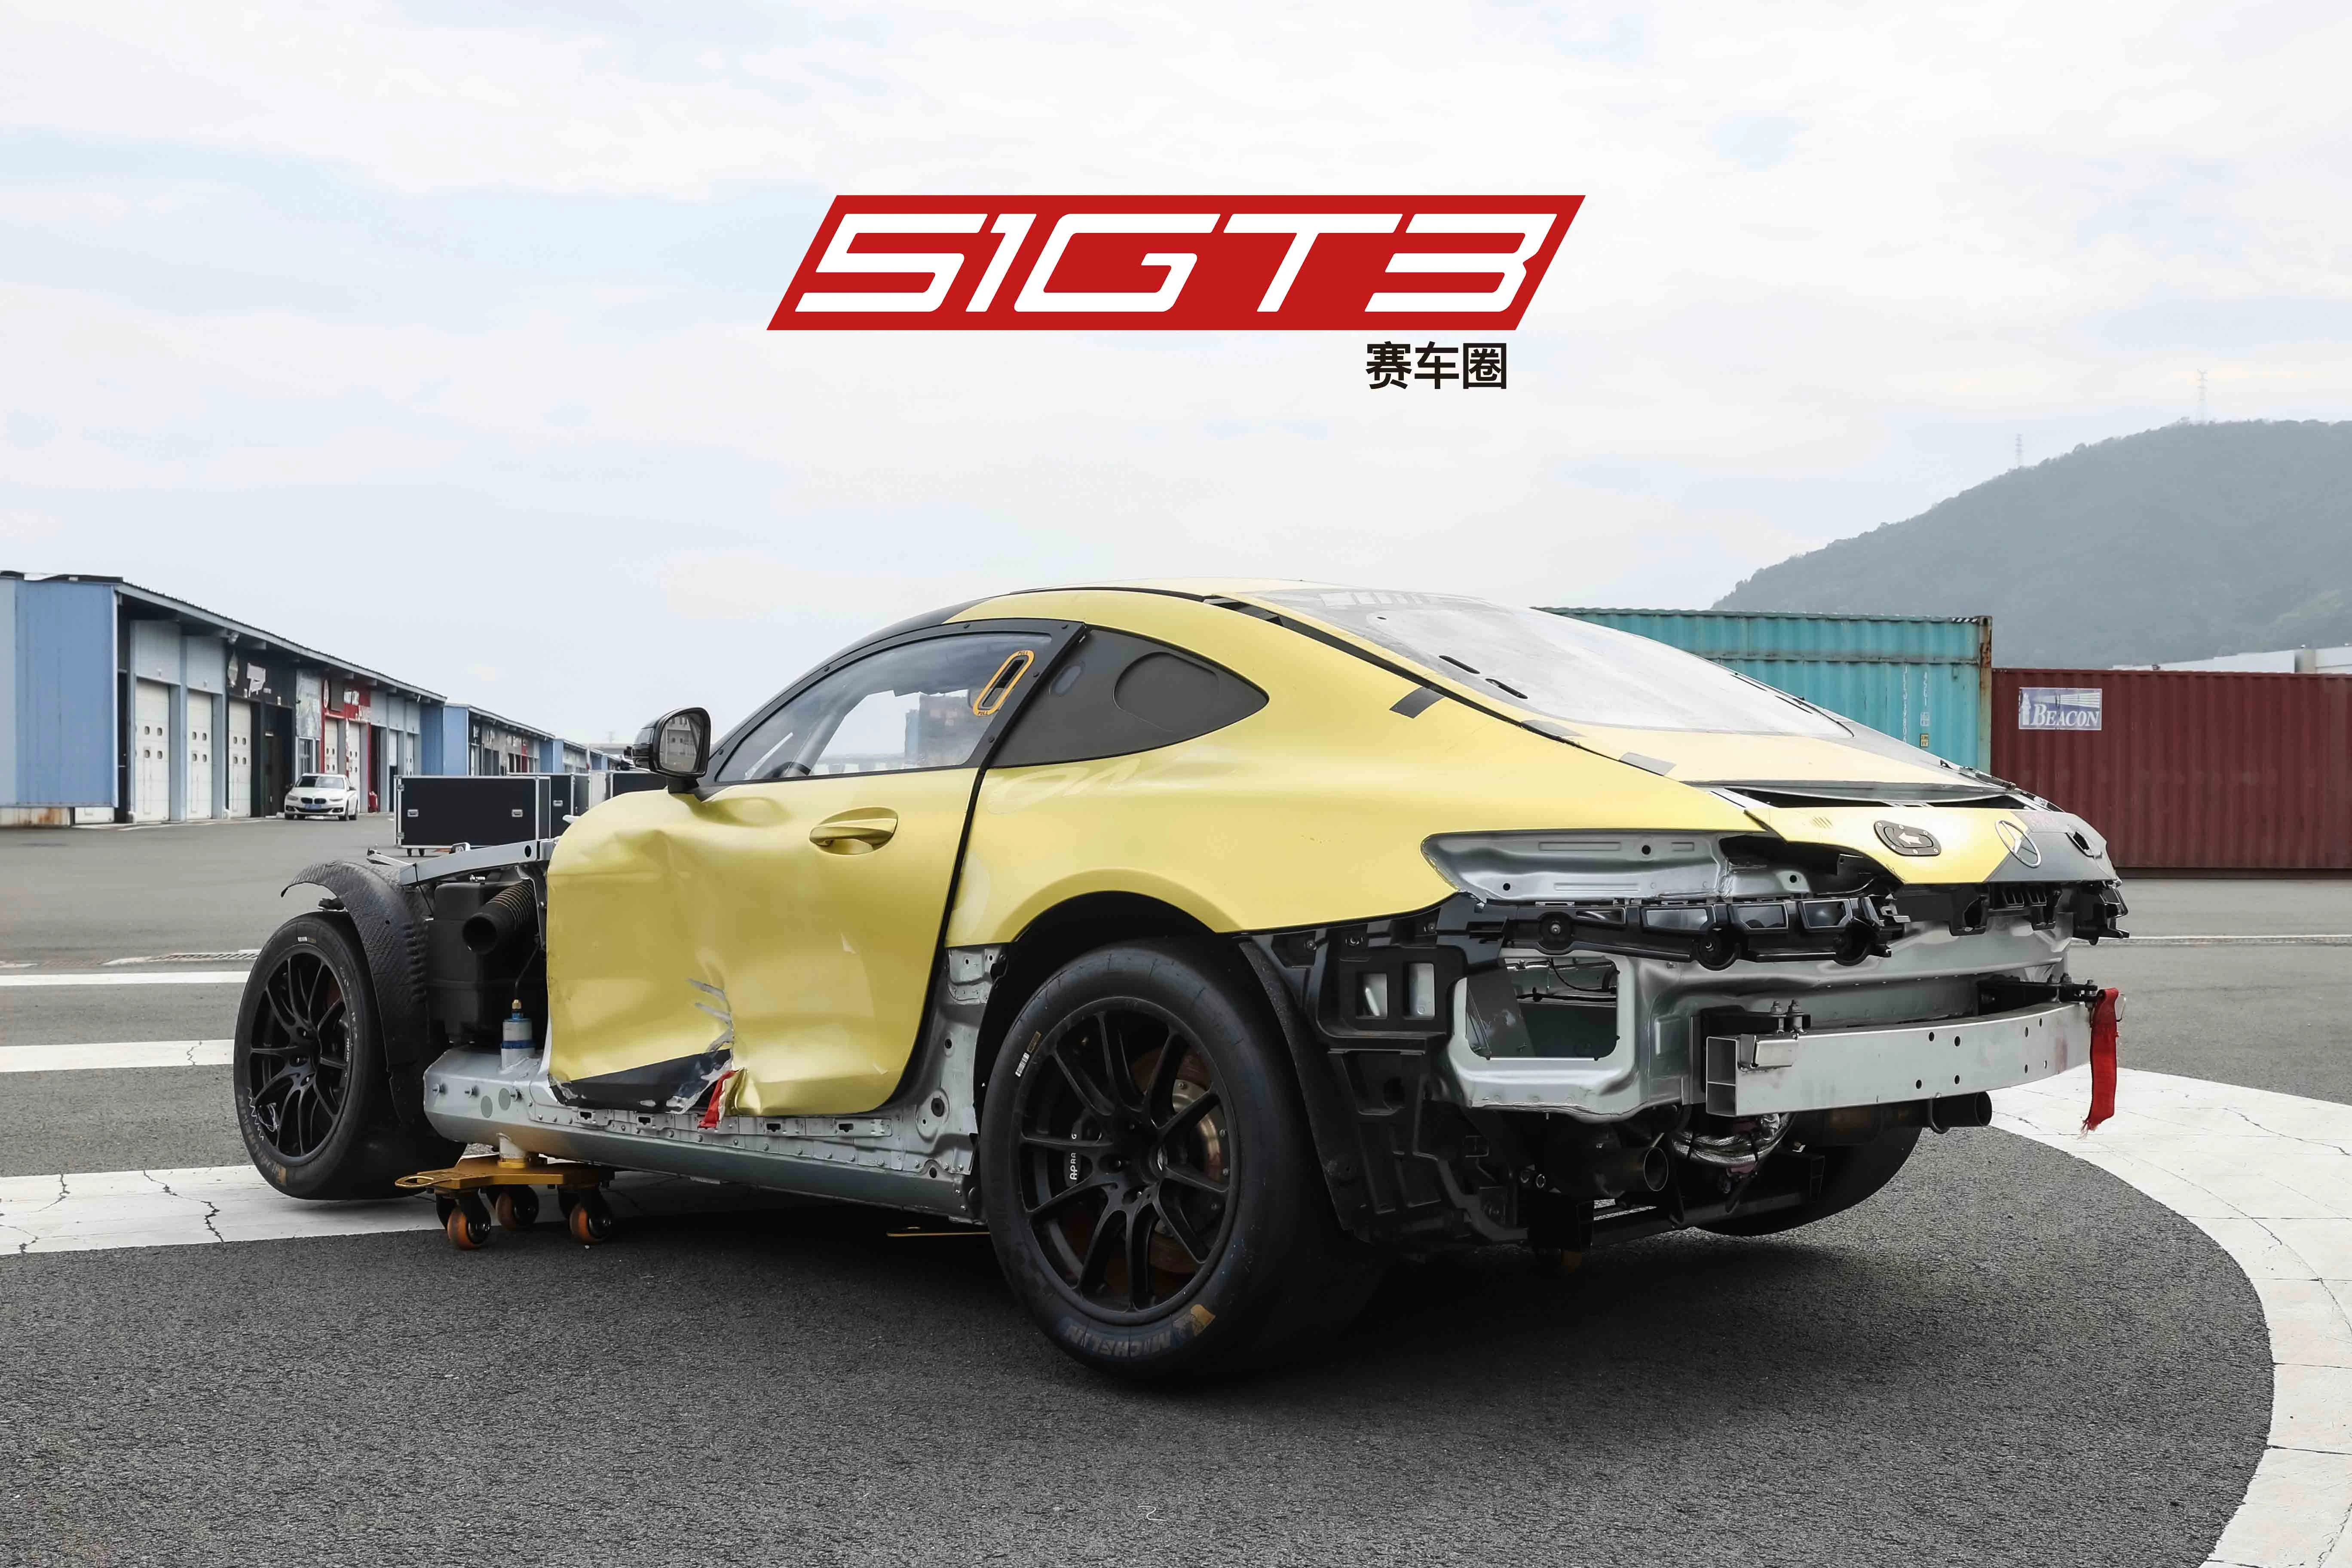 2019 메르세데스 -벤츠 AMG GT4 #3(난파) - 가격 인하!